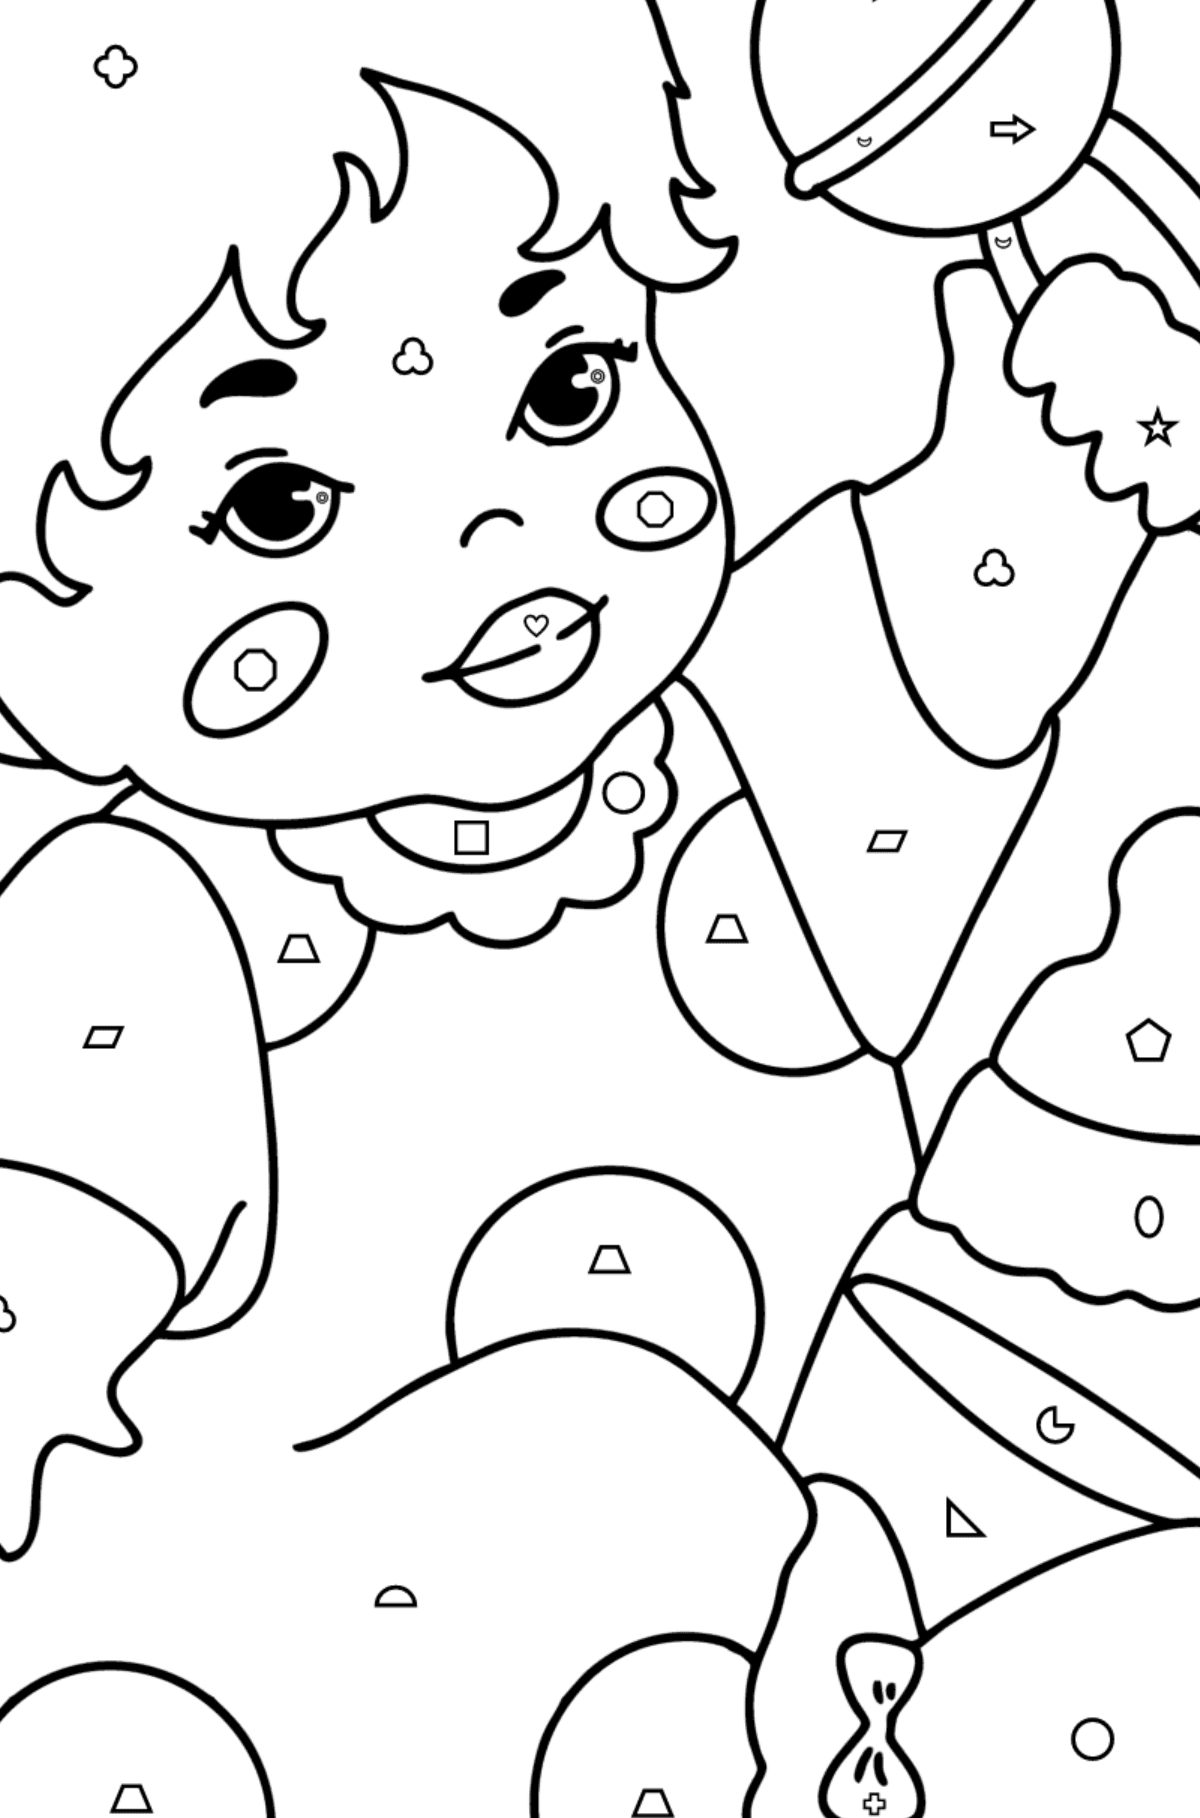 Раскраска Малыш с погремушкой - Картинка высокого качества для Детей